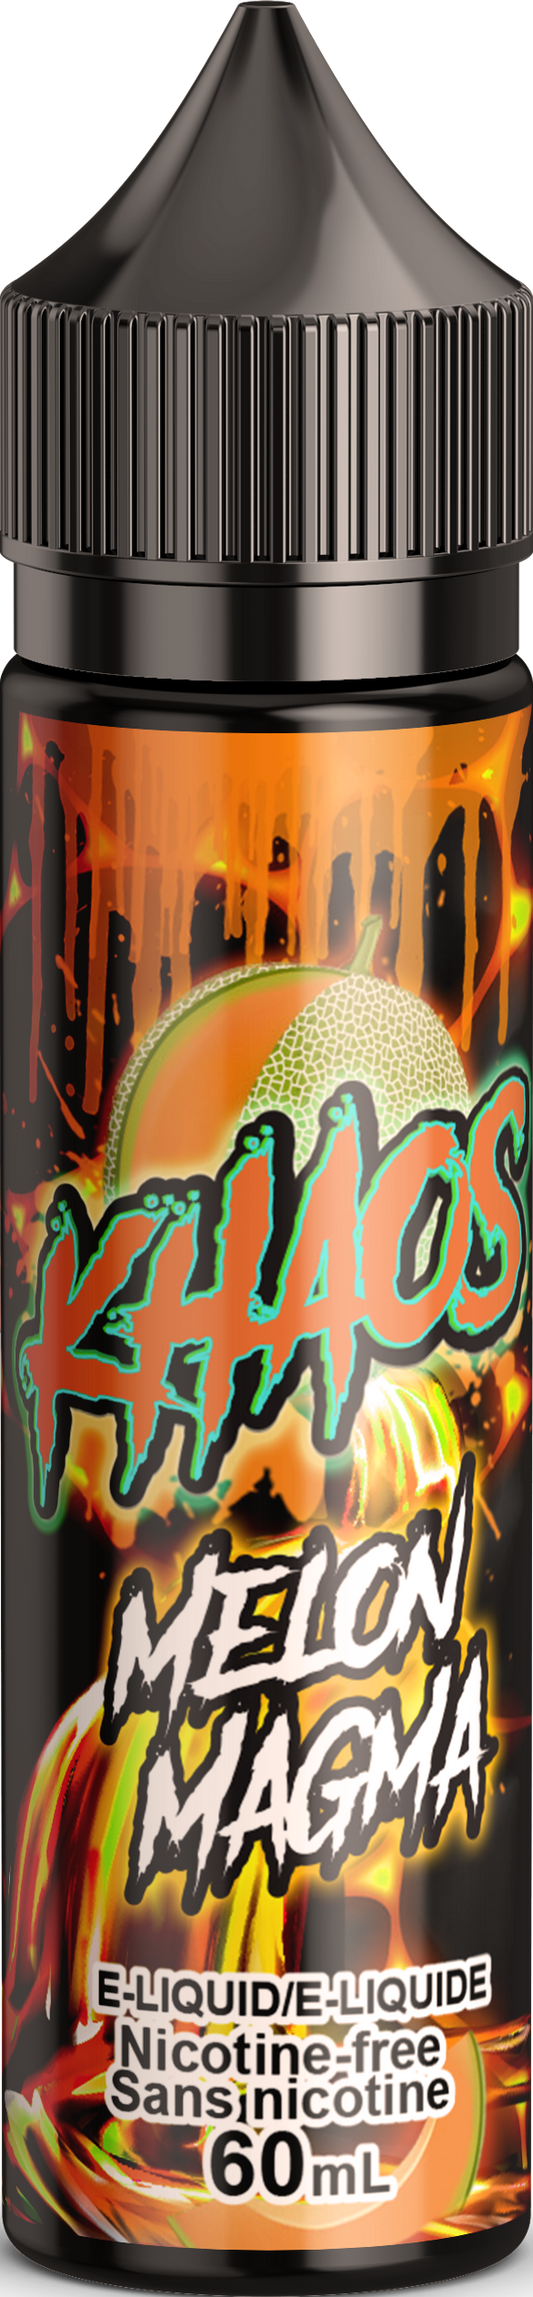 Khaos - Melon Magma